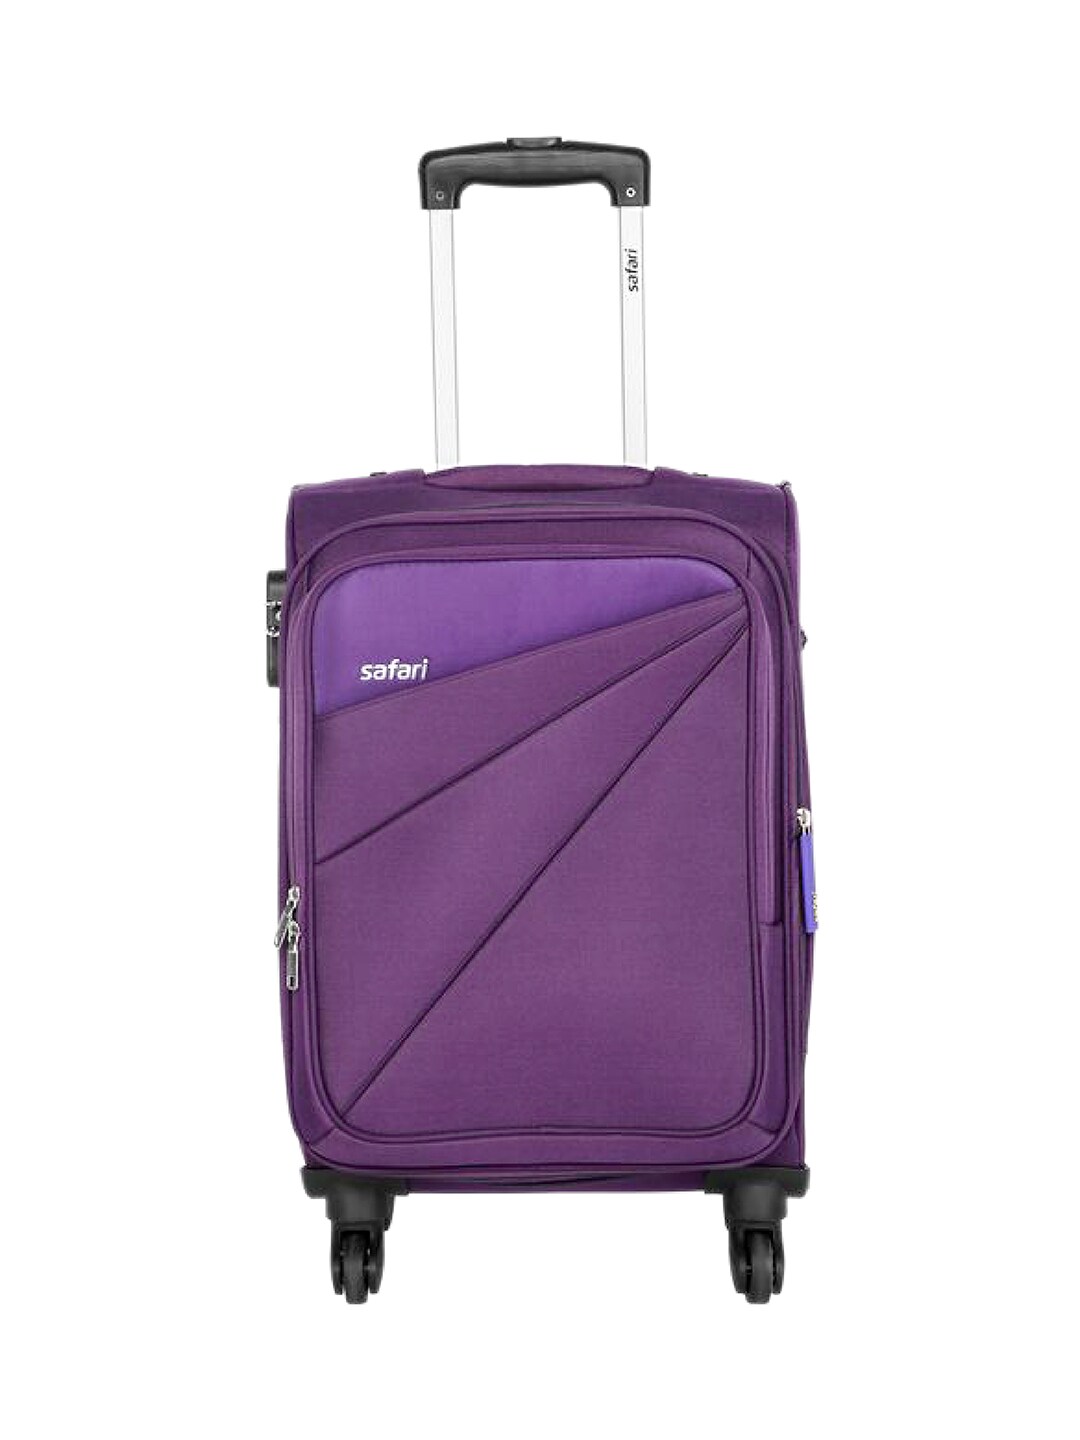 Safari Purple Mimik Cabin Trolley Bag Price in India